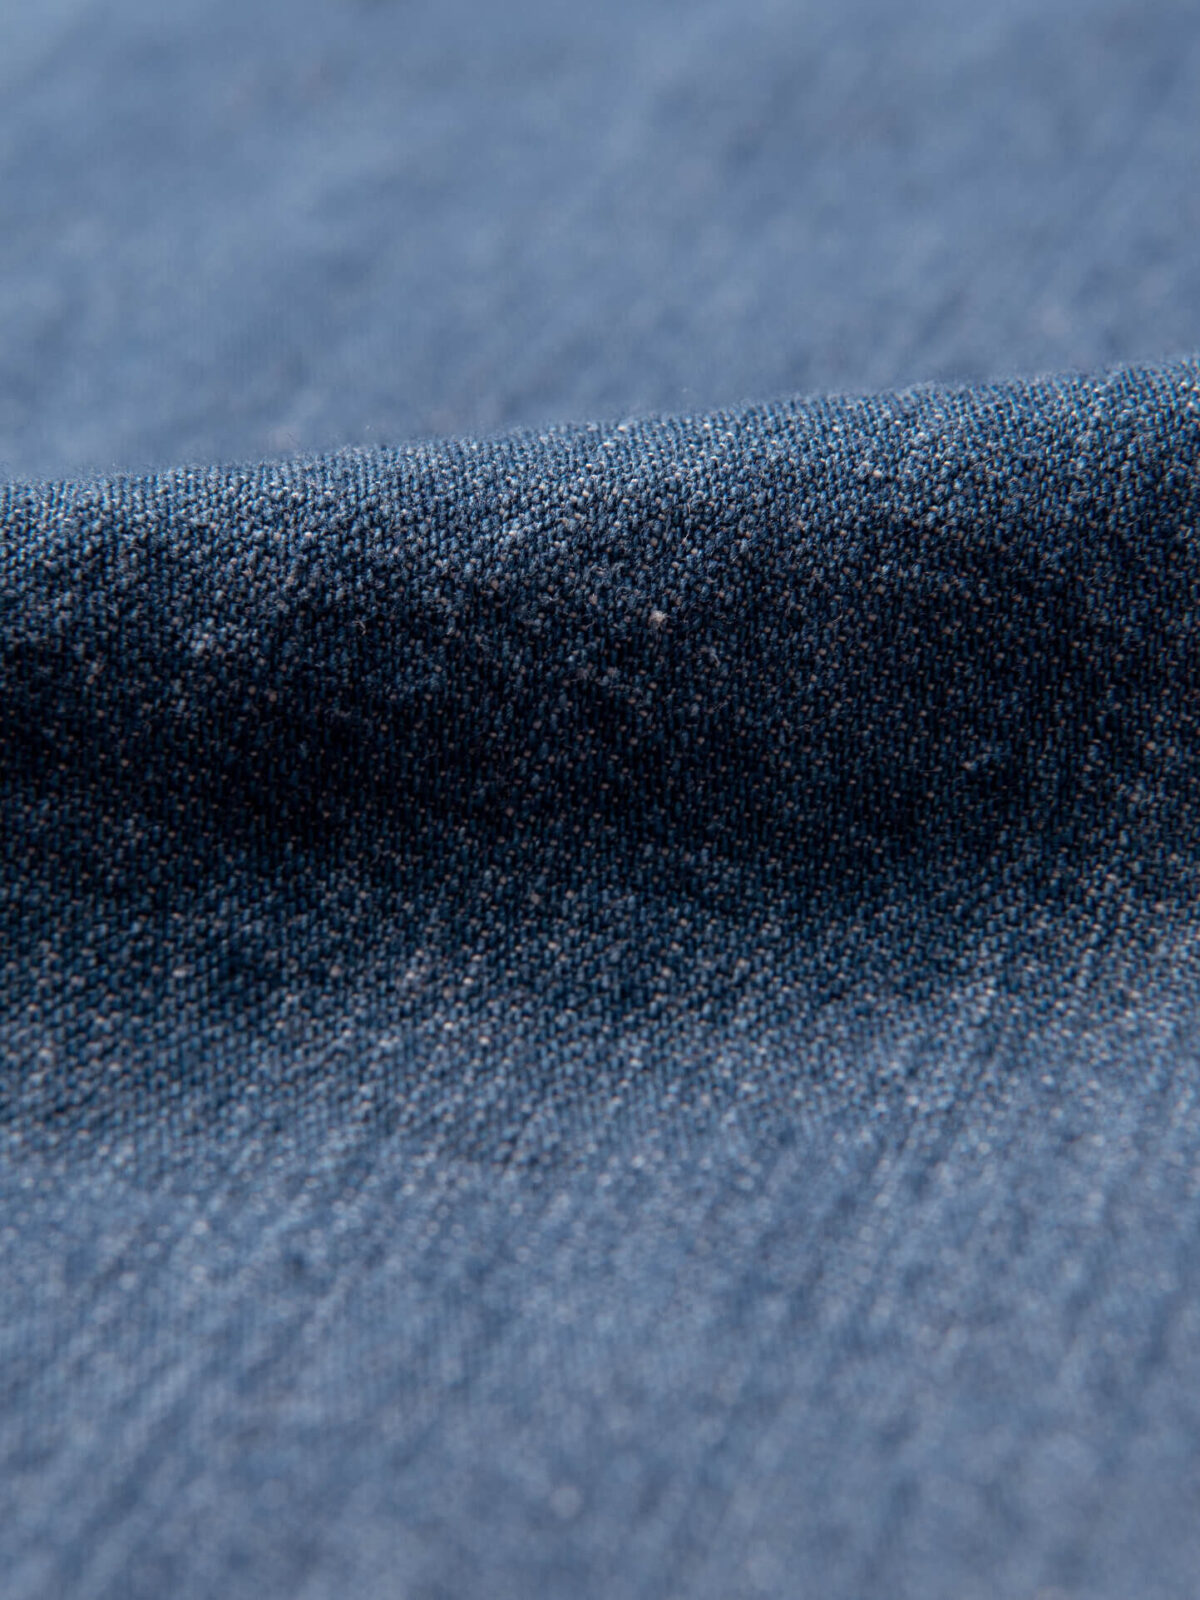 Oz Non-Stretch Denim 90's Blue Core Fabrics, 45% OFF